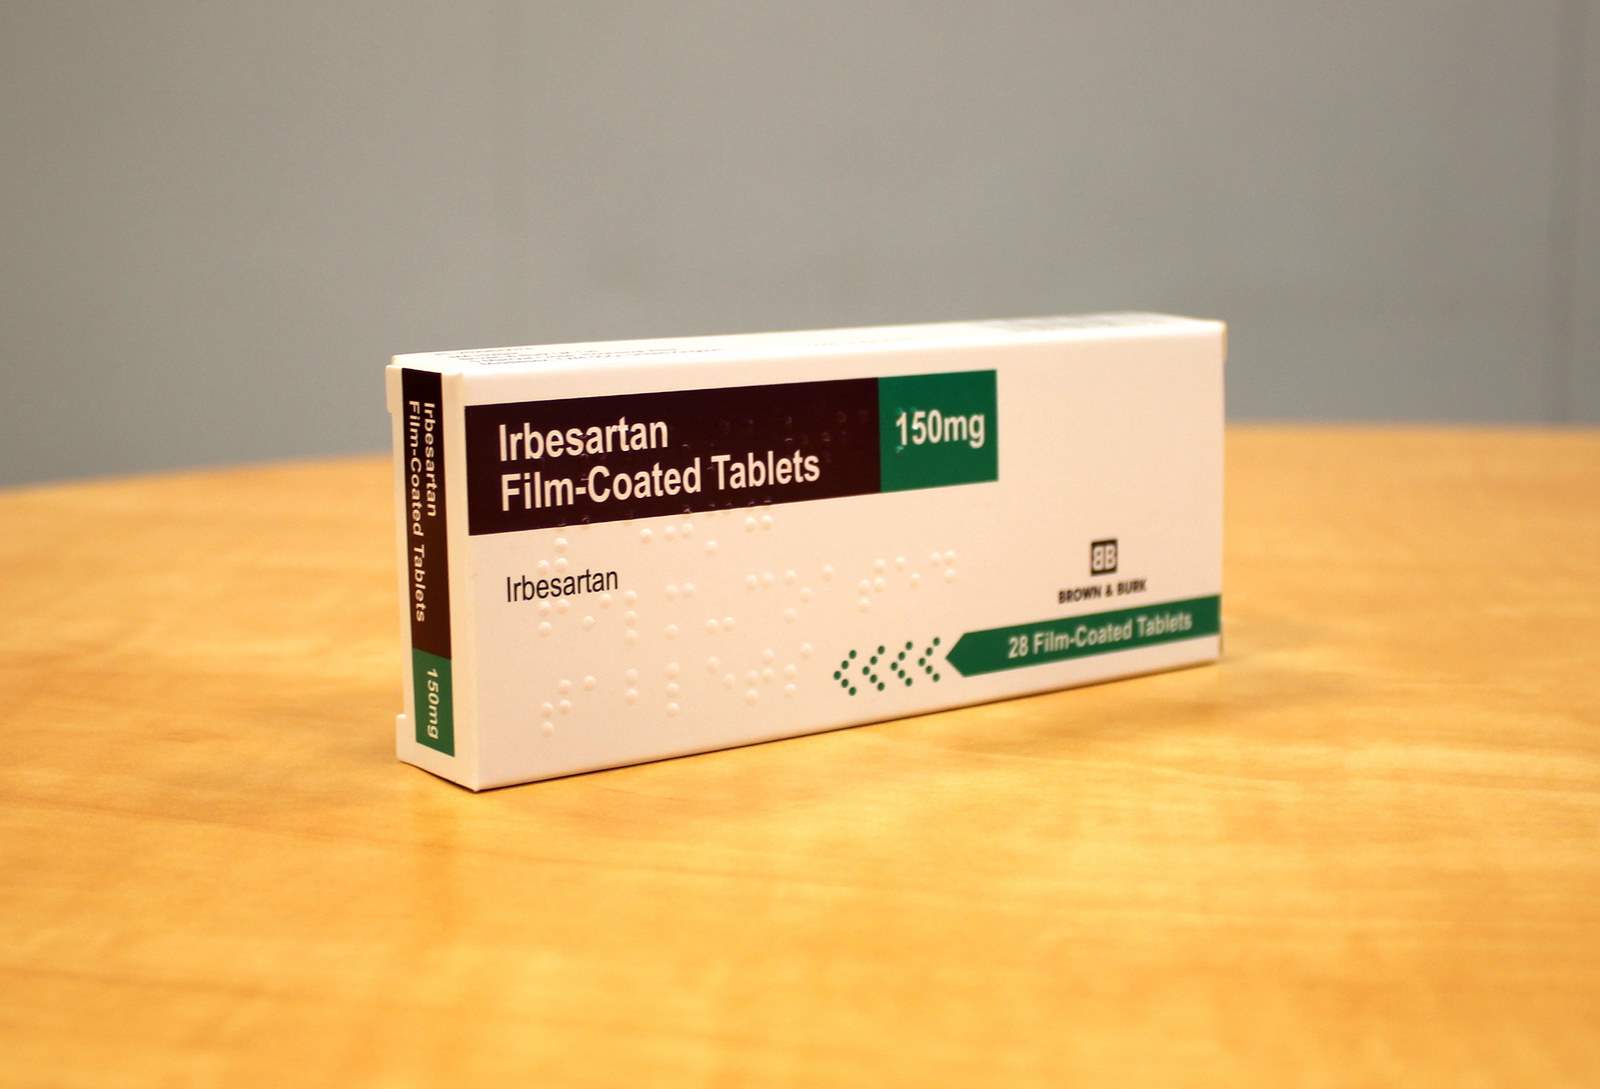 fluconazole 150 mg uses in telugu